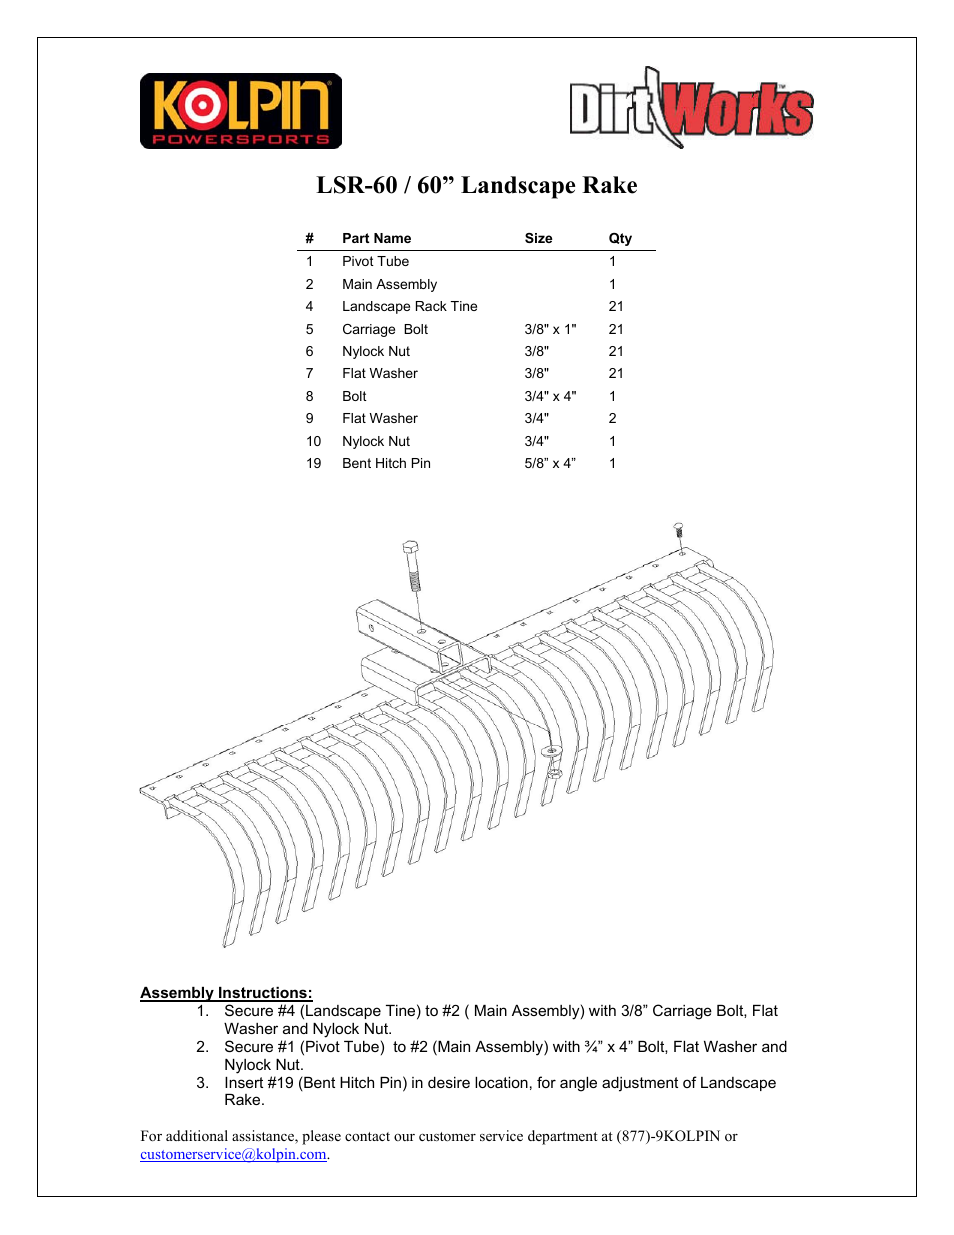 LSR-60 - 60” Landscape Rake